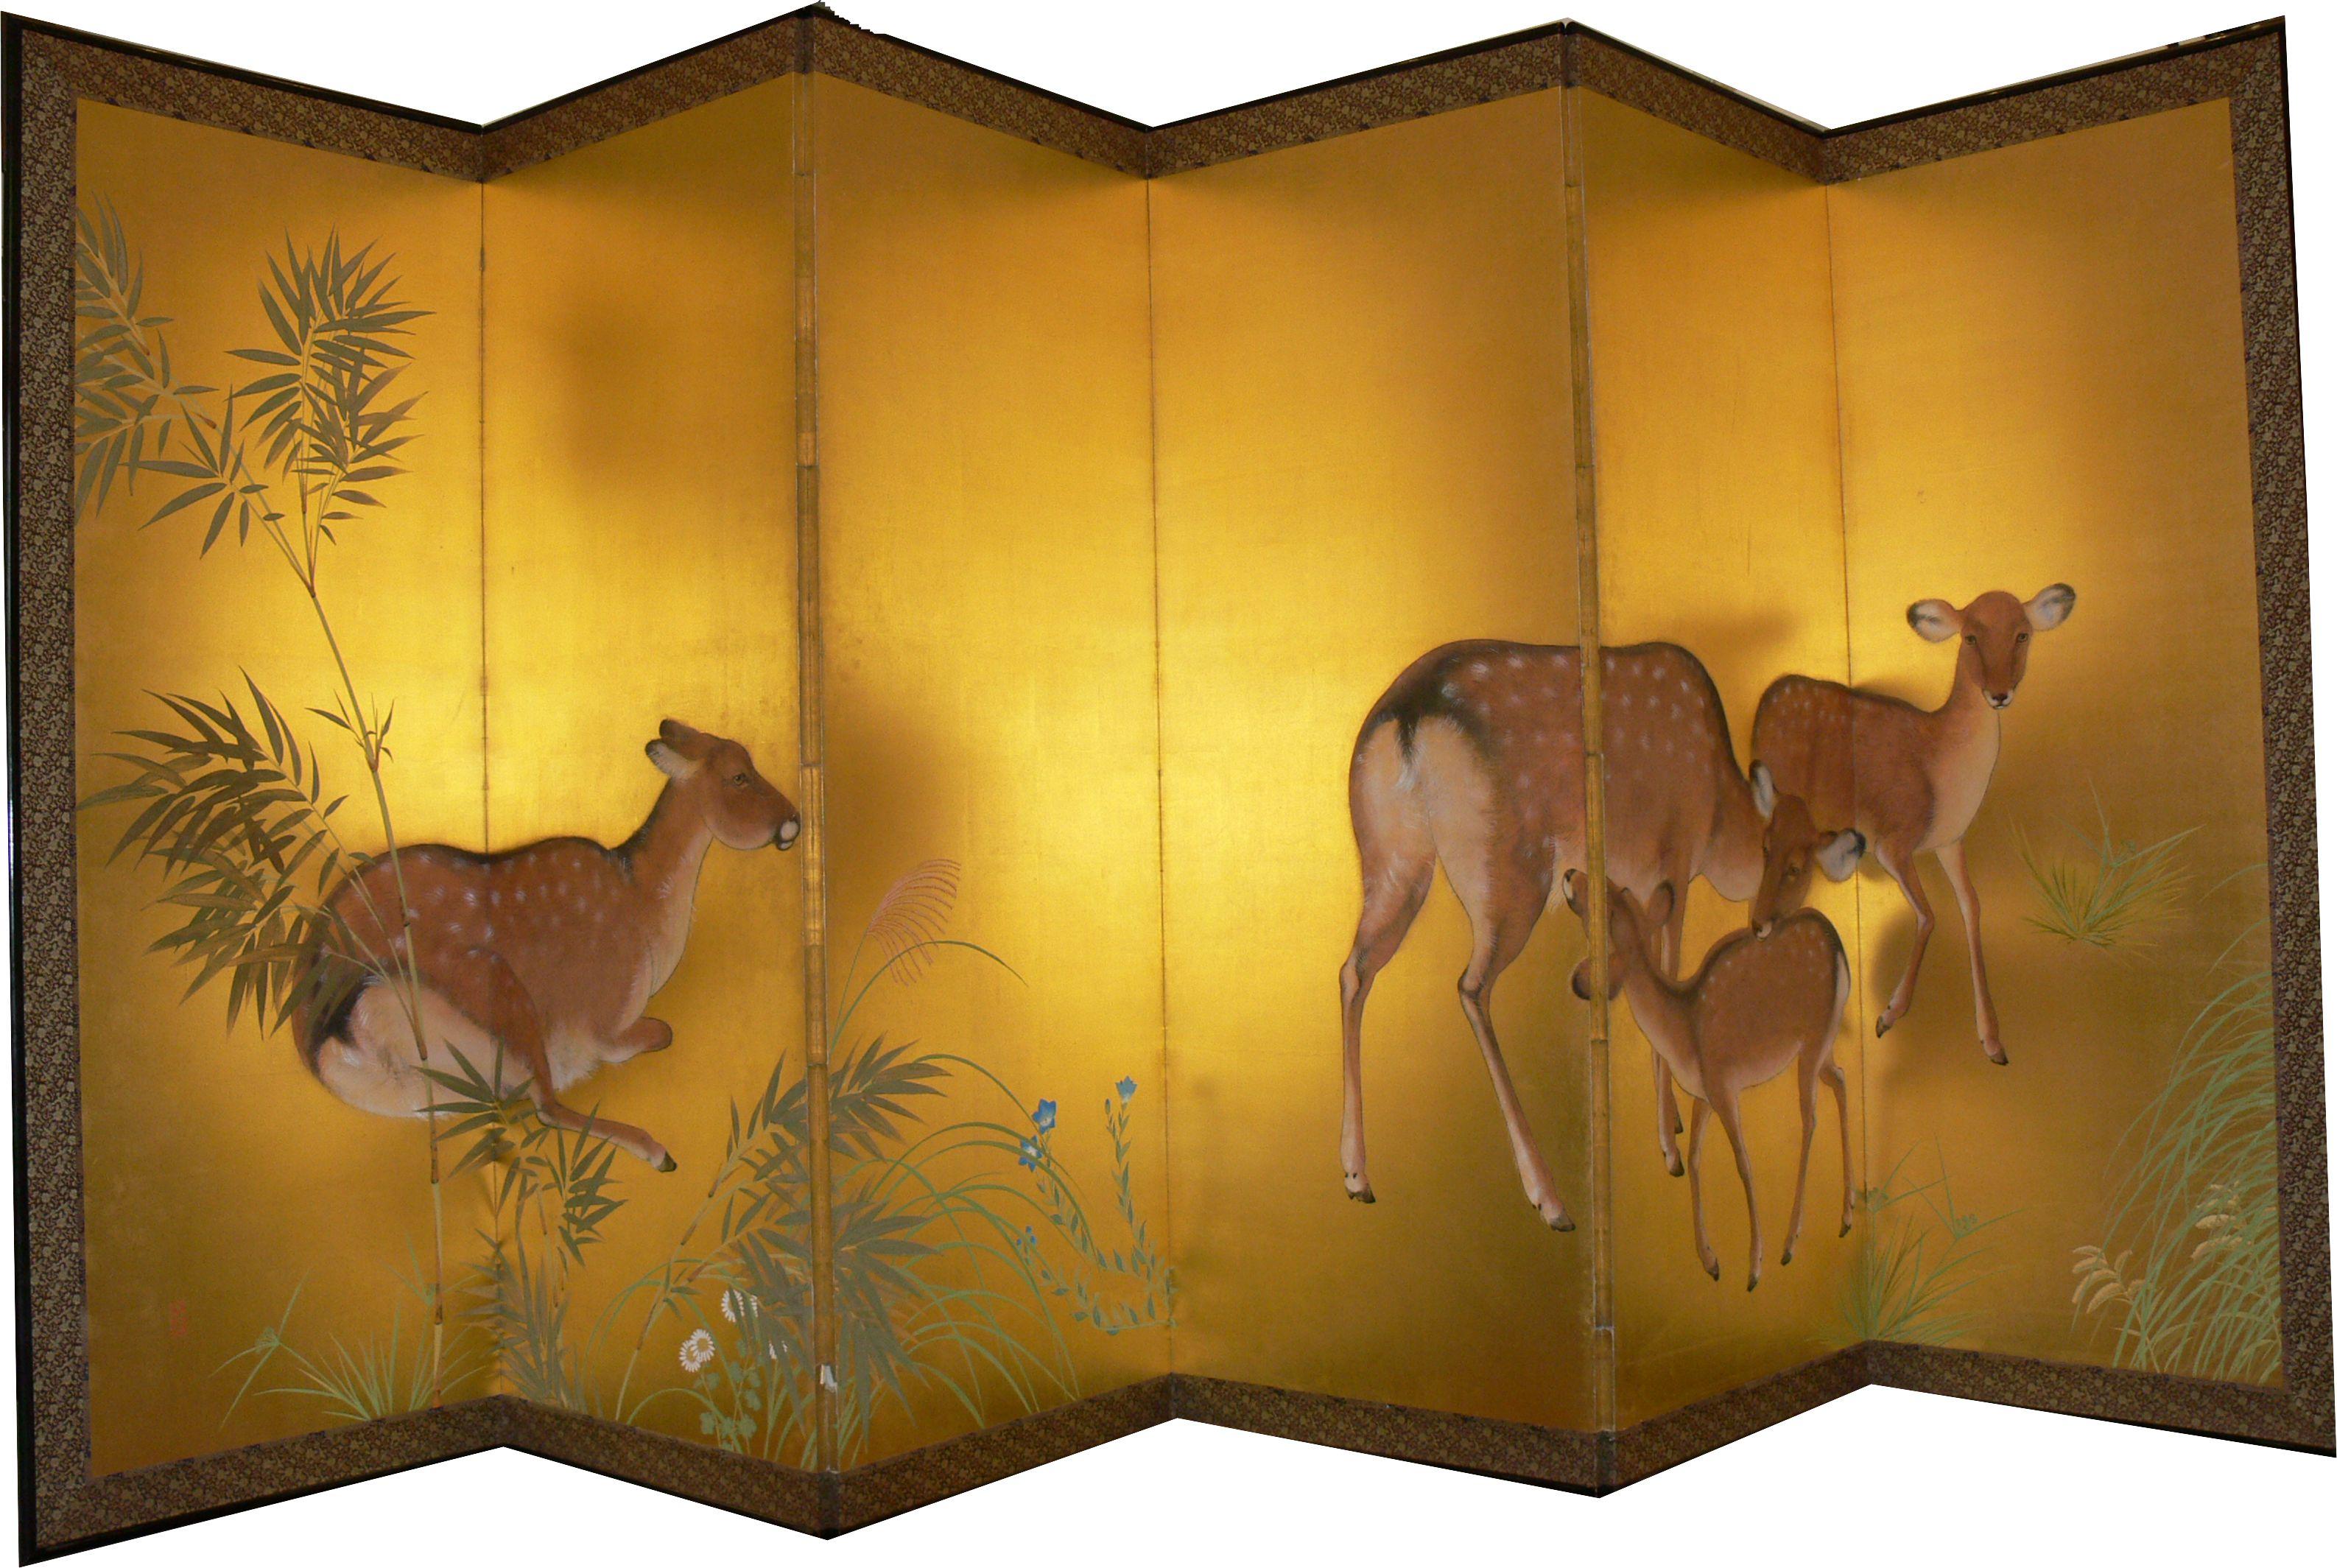 Hergestellt aus Holz, Seide und Papier, 1921. Sechspaneelige Windwand (Rokkyoku byobu) im Nihonga-Stil. Sie dienen unter anderem zur Abtrennung von Innenräumen und zur Abgrenzung von Privatbereichen. Signiert: 